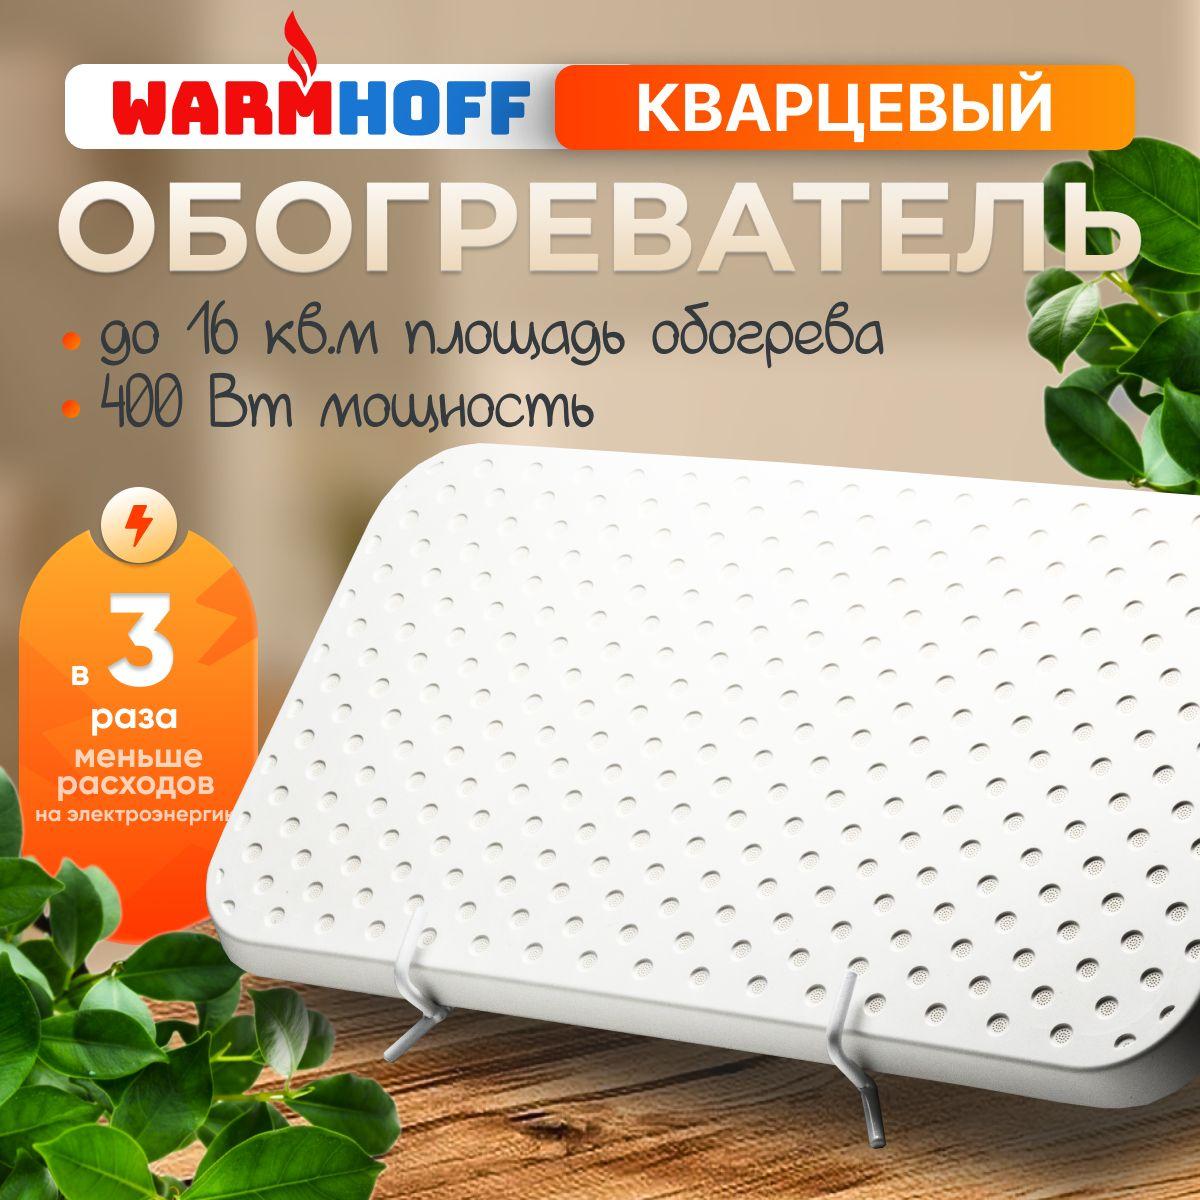 WarmHoff | Кварцевый обогреватель для дома, для дачи, для теплицы Warmhoff Elegant 400 ВТ, настенный, напольный